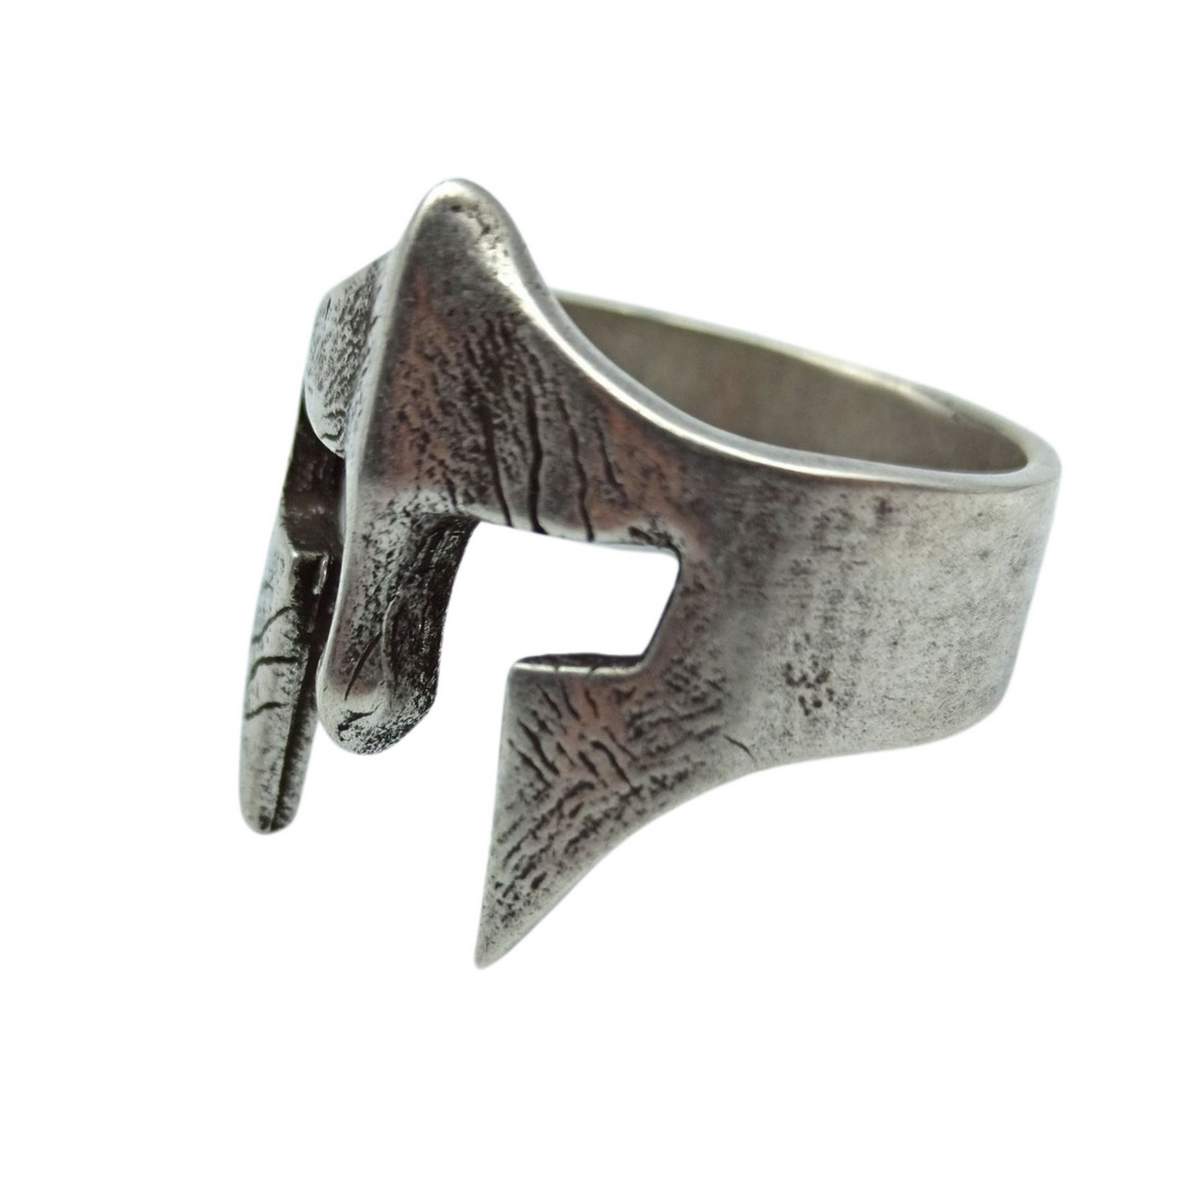 Spartan warrior bronze ring   